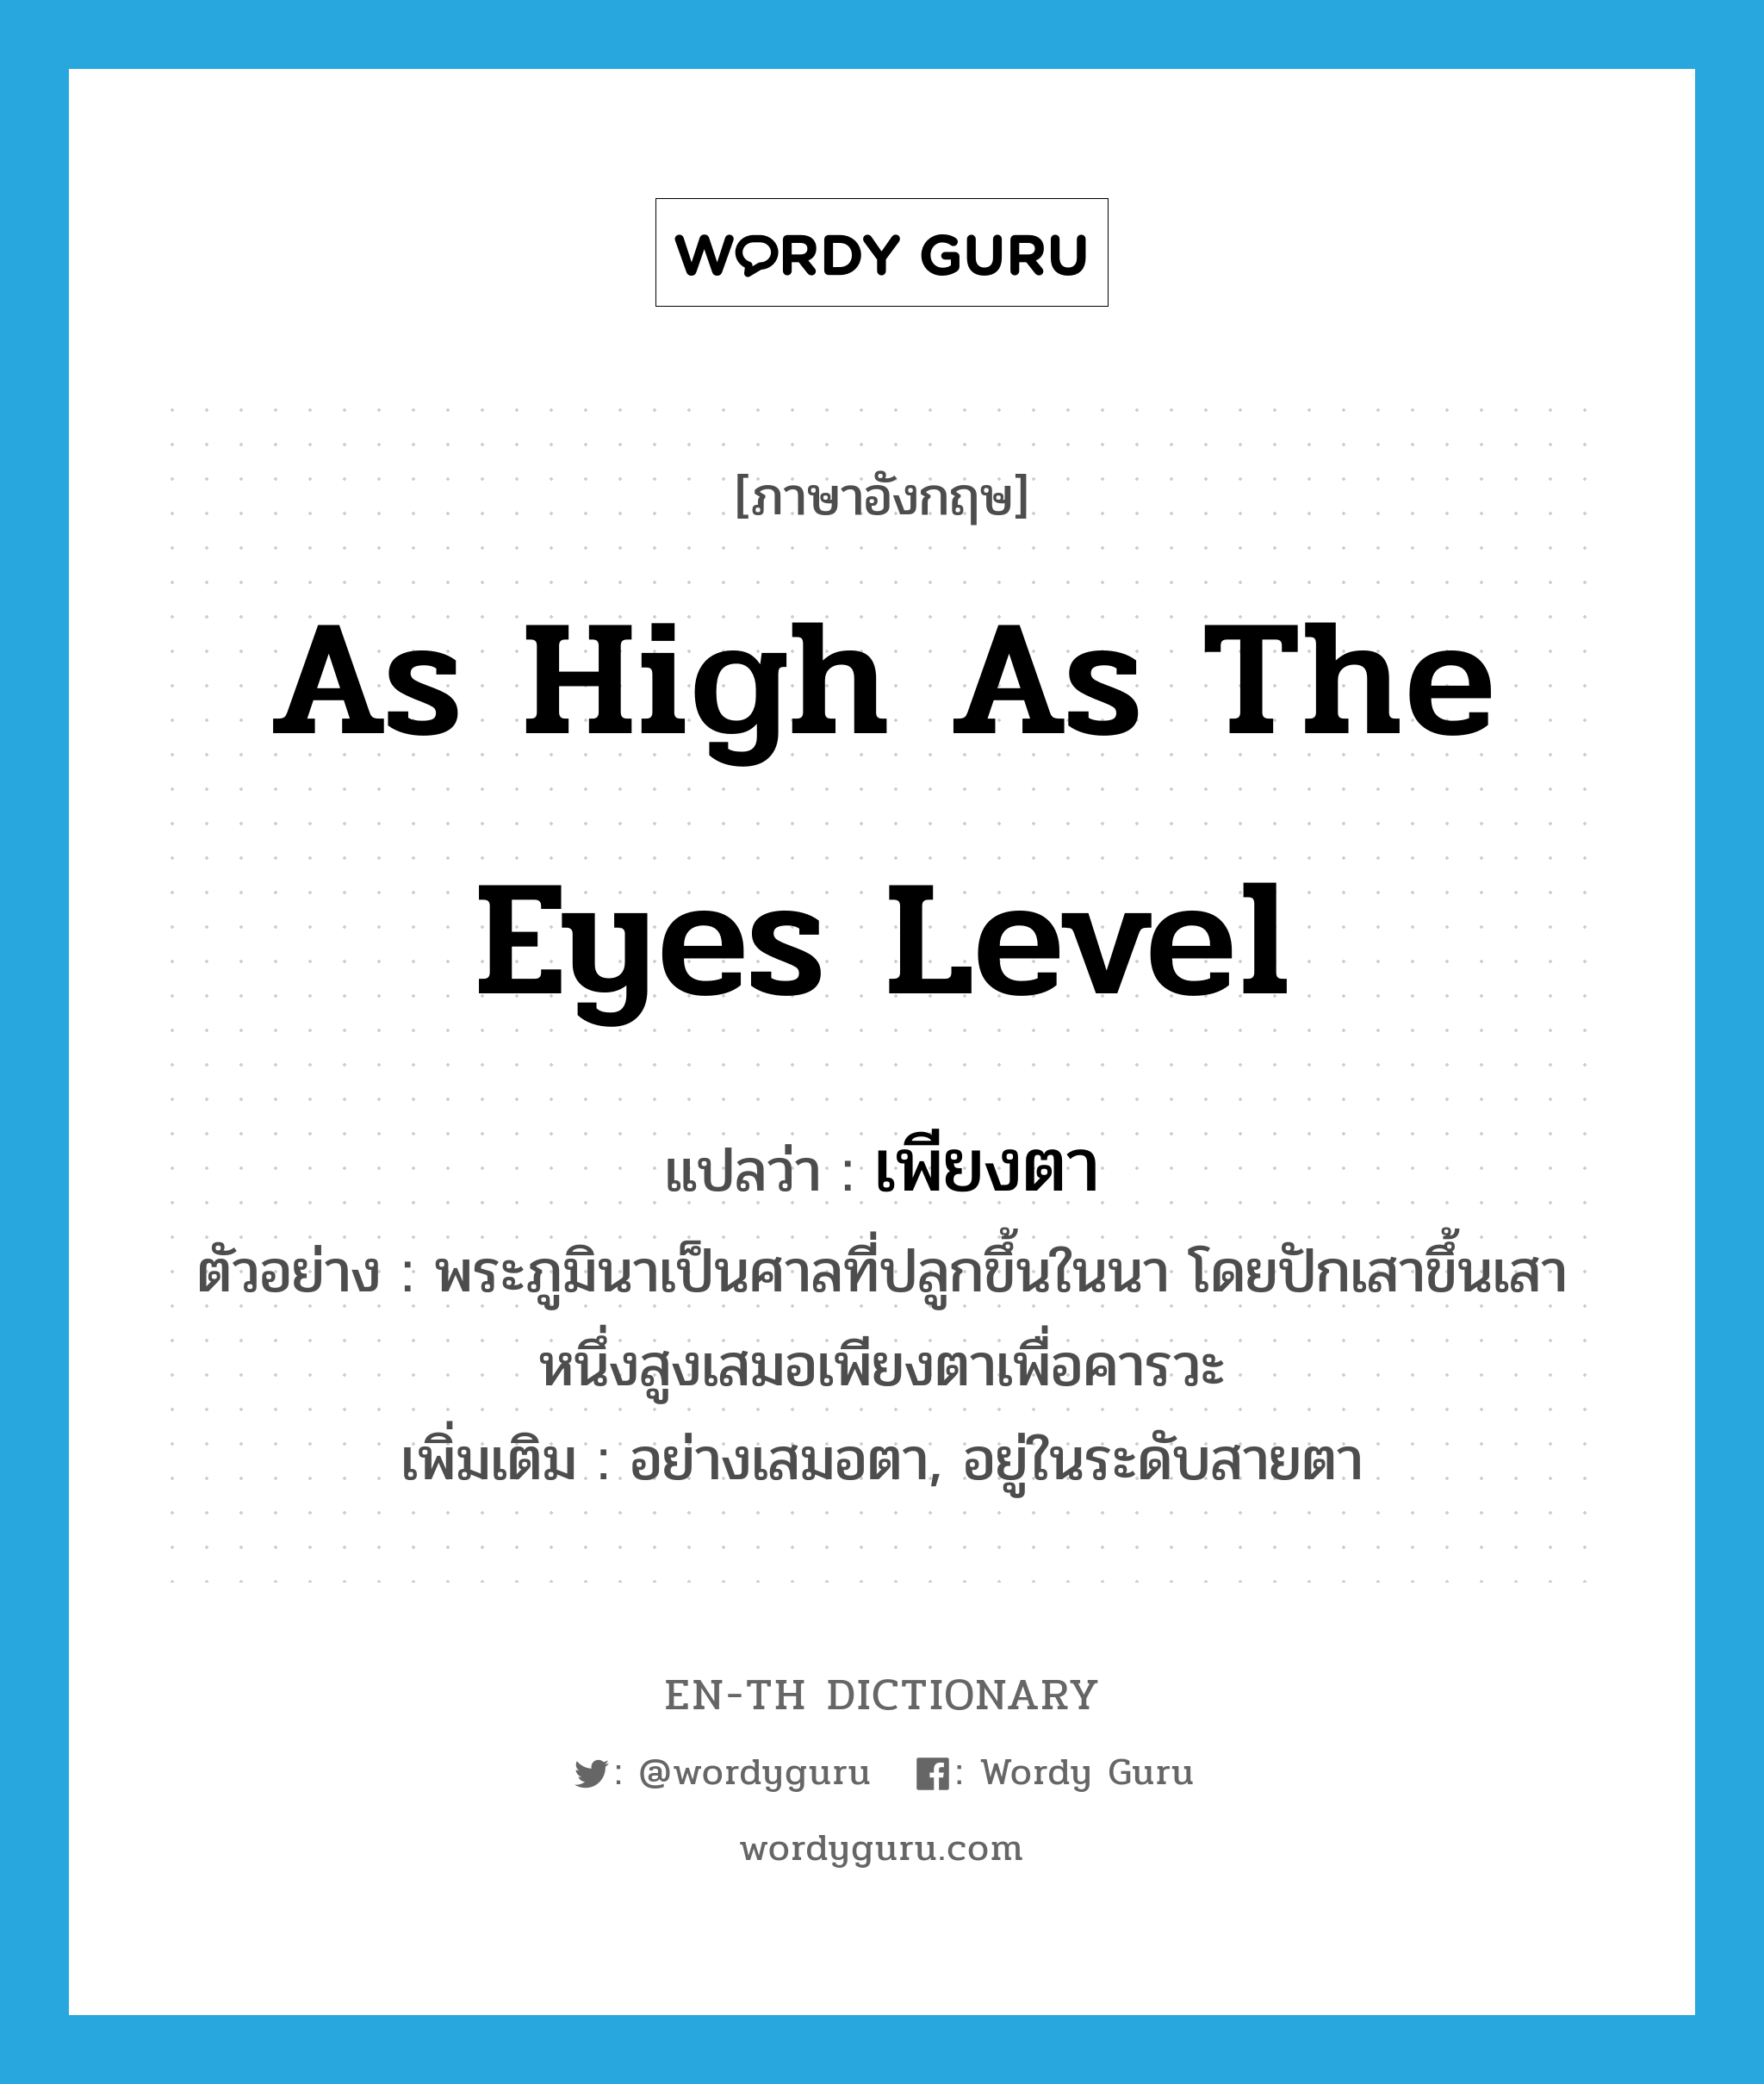 as high as the eyes level แปลว่า?, คำศัพท์ภาษาอังกฤษ as high as the eyes level แปลว่า เพียงตา ประเภท ADV ตัวอย่าง พระภูมินาเป็นศาลที่ปลูกขึ้นในนา โดยปักเสาขึ้นเสาหนึ่งสูงเสมอเพียงตาเพื่อคารวะ เพิ่มเติม อย่างเสมอตา, อยู่ในระดับสายตา หมวด ADV